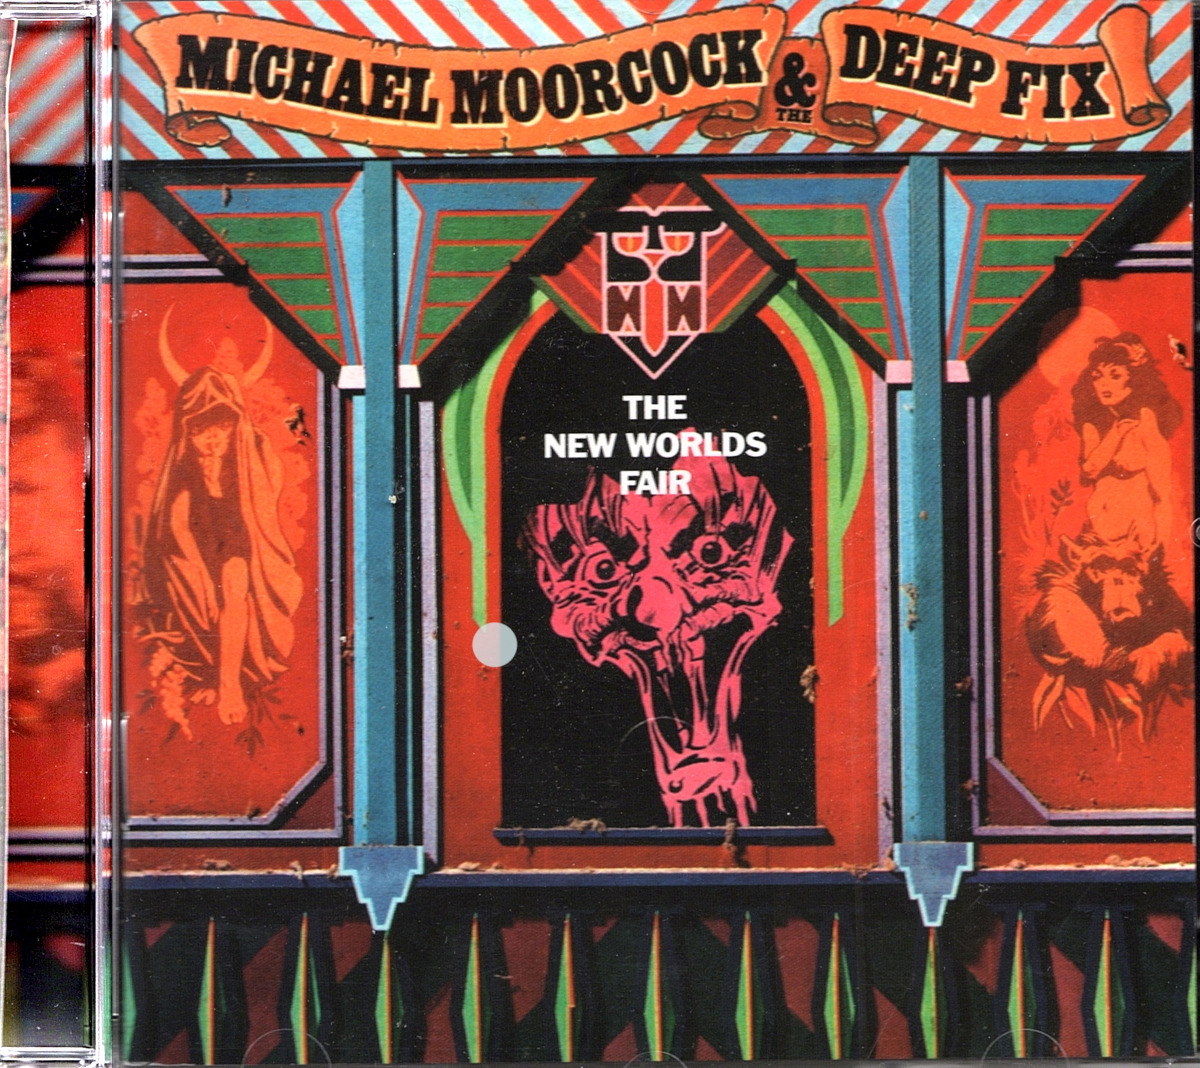 MICHAEL MOORCOCK & DEEP FIX - THE NEW WORLDS FAIR